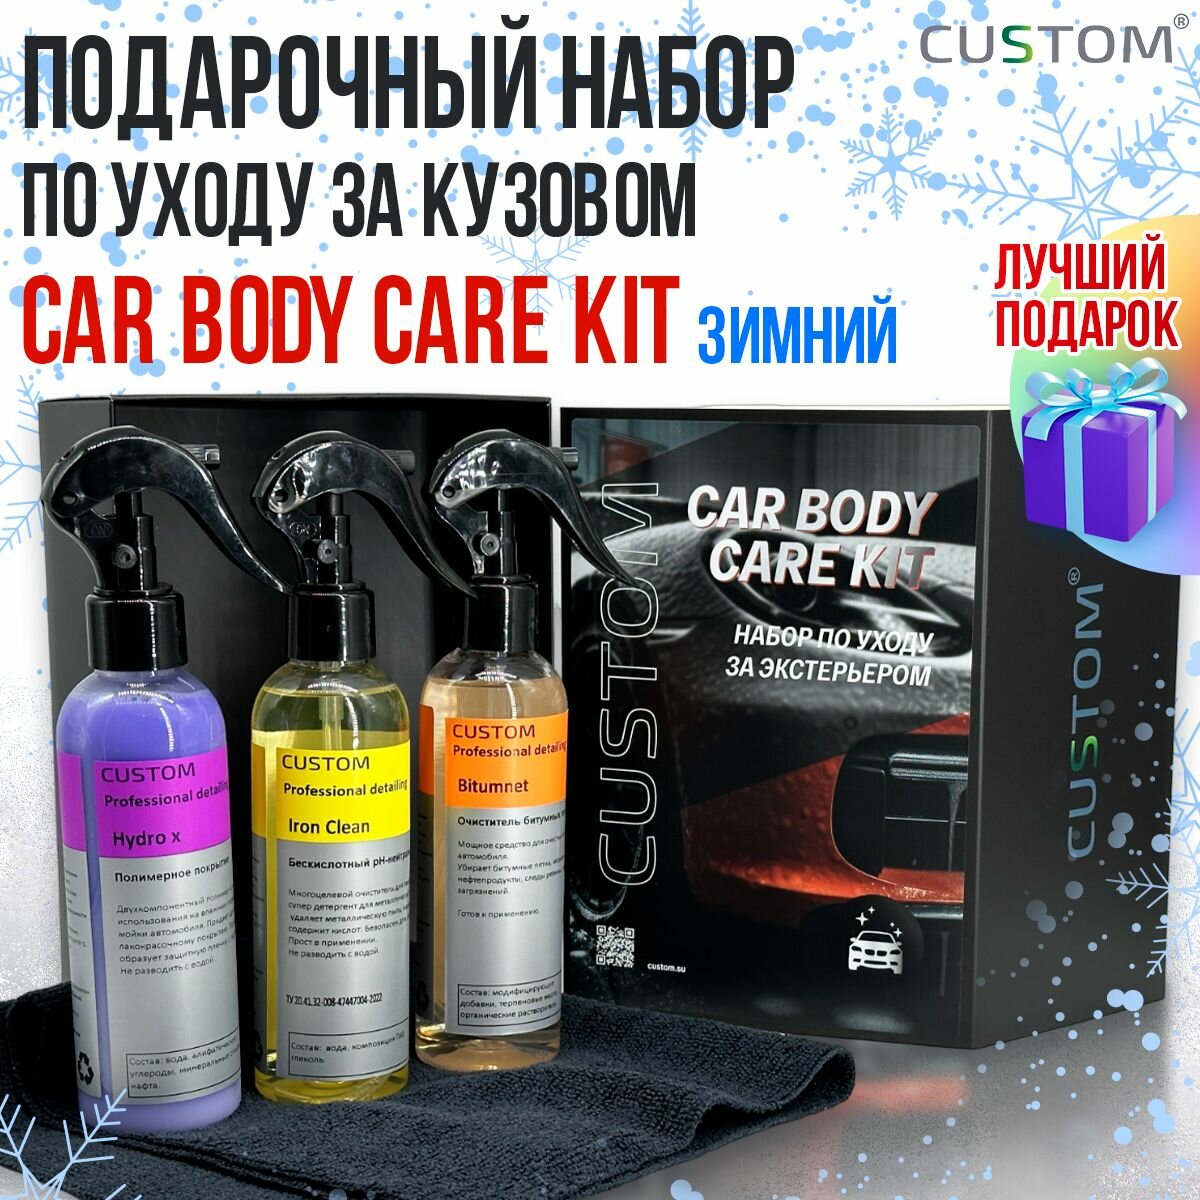 Подарочный набор автохимии автокосметики по уходу за экстерьером автомобиля CUSTOM Car Body Care Kit зимний